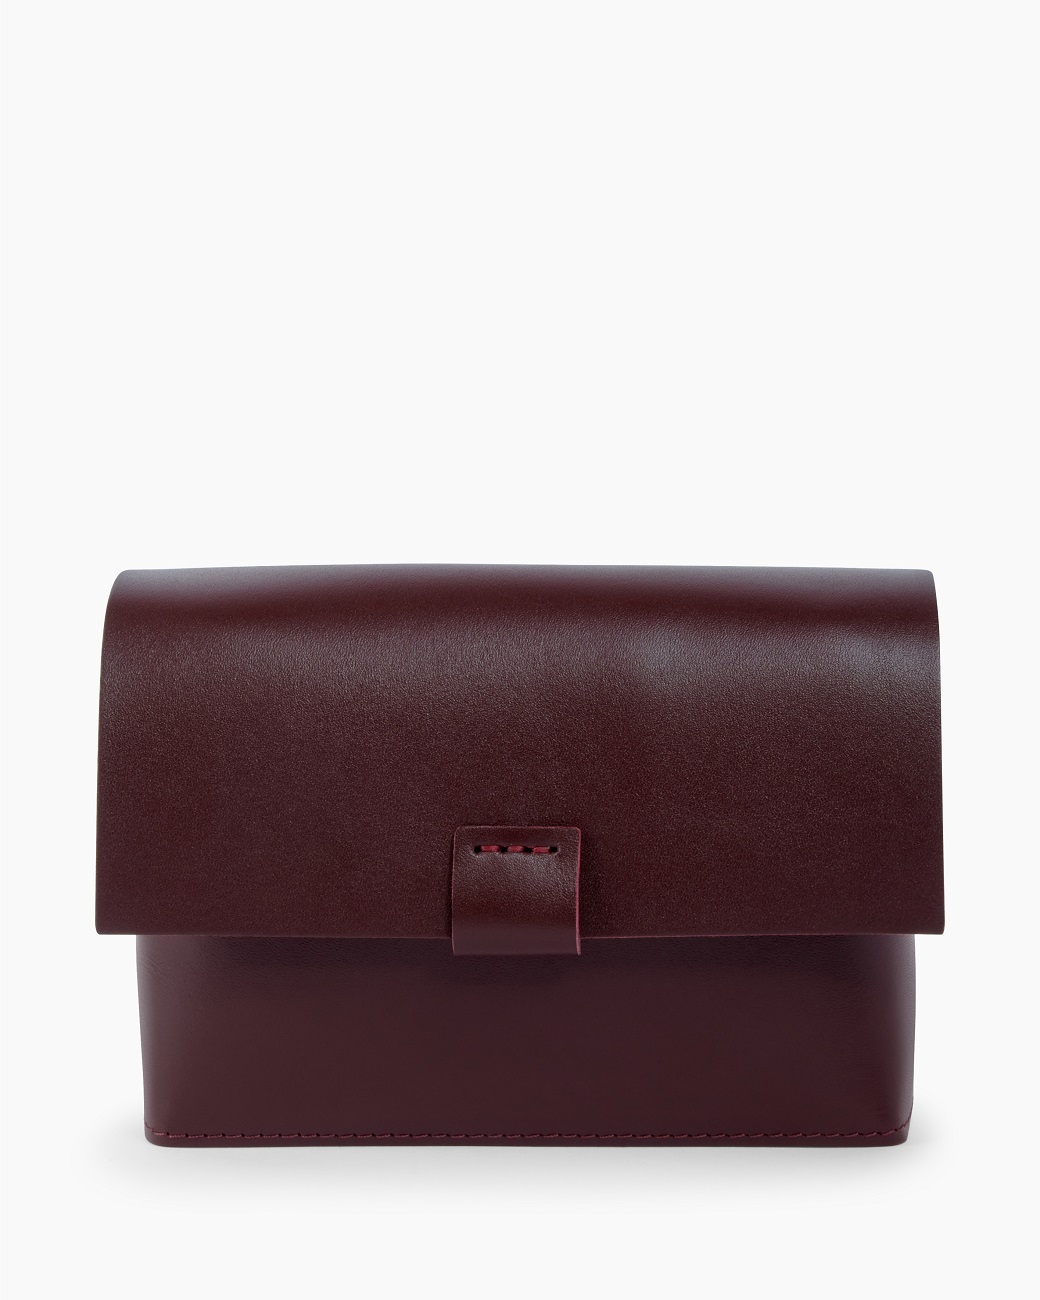 Женская поясная сумка из натуральной кожи бордовая A004 burgundy